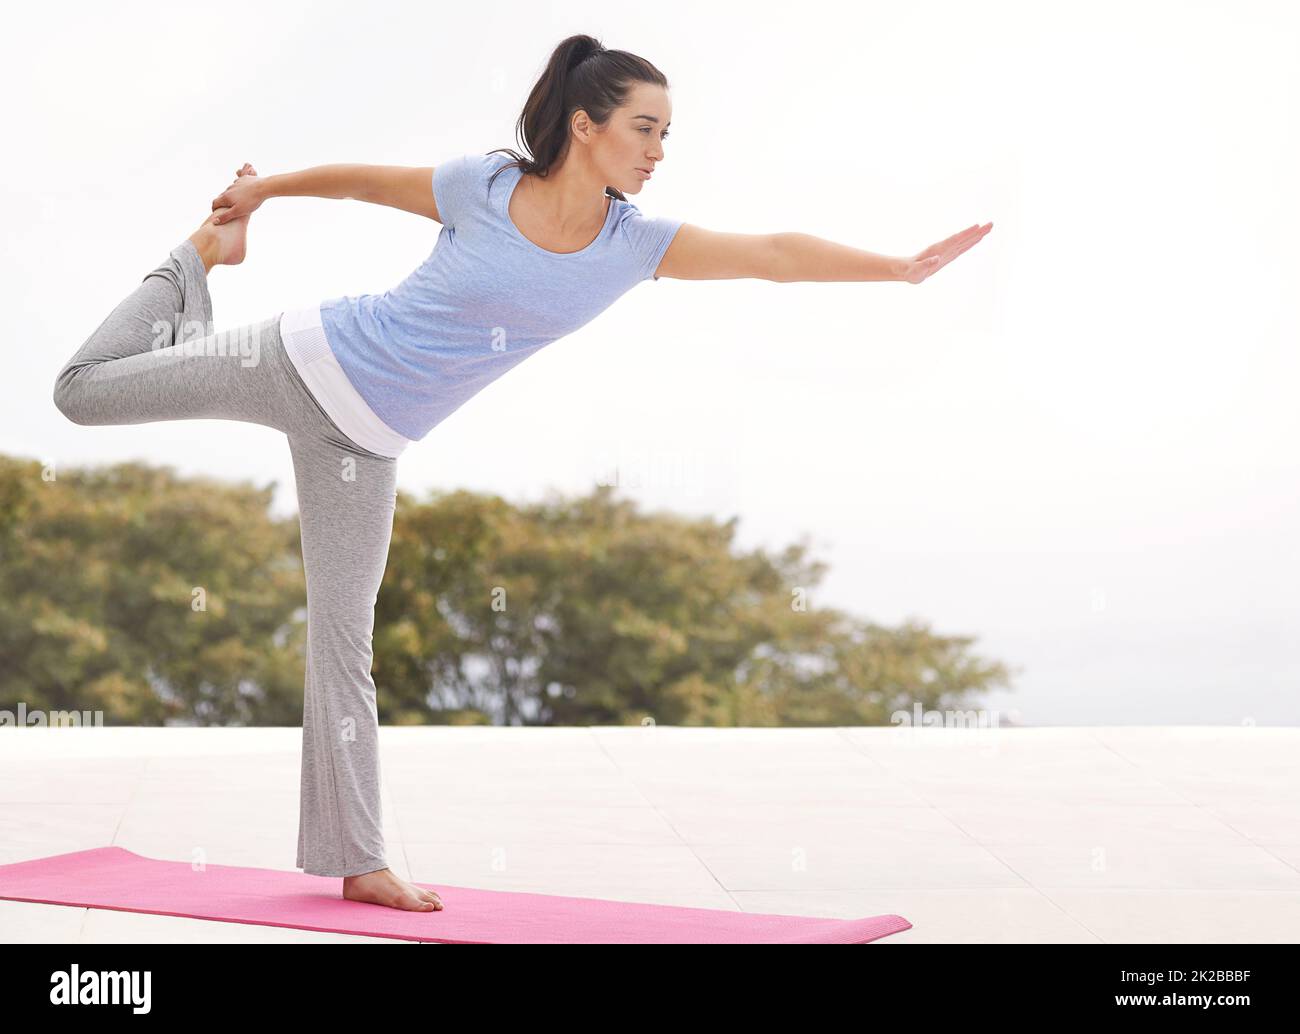 Vous vous sentez déjà flexible. Prise de vue en longueur d'une jeune femme faisant du yoga à l'extérieur. Banque D'Images